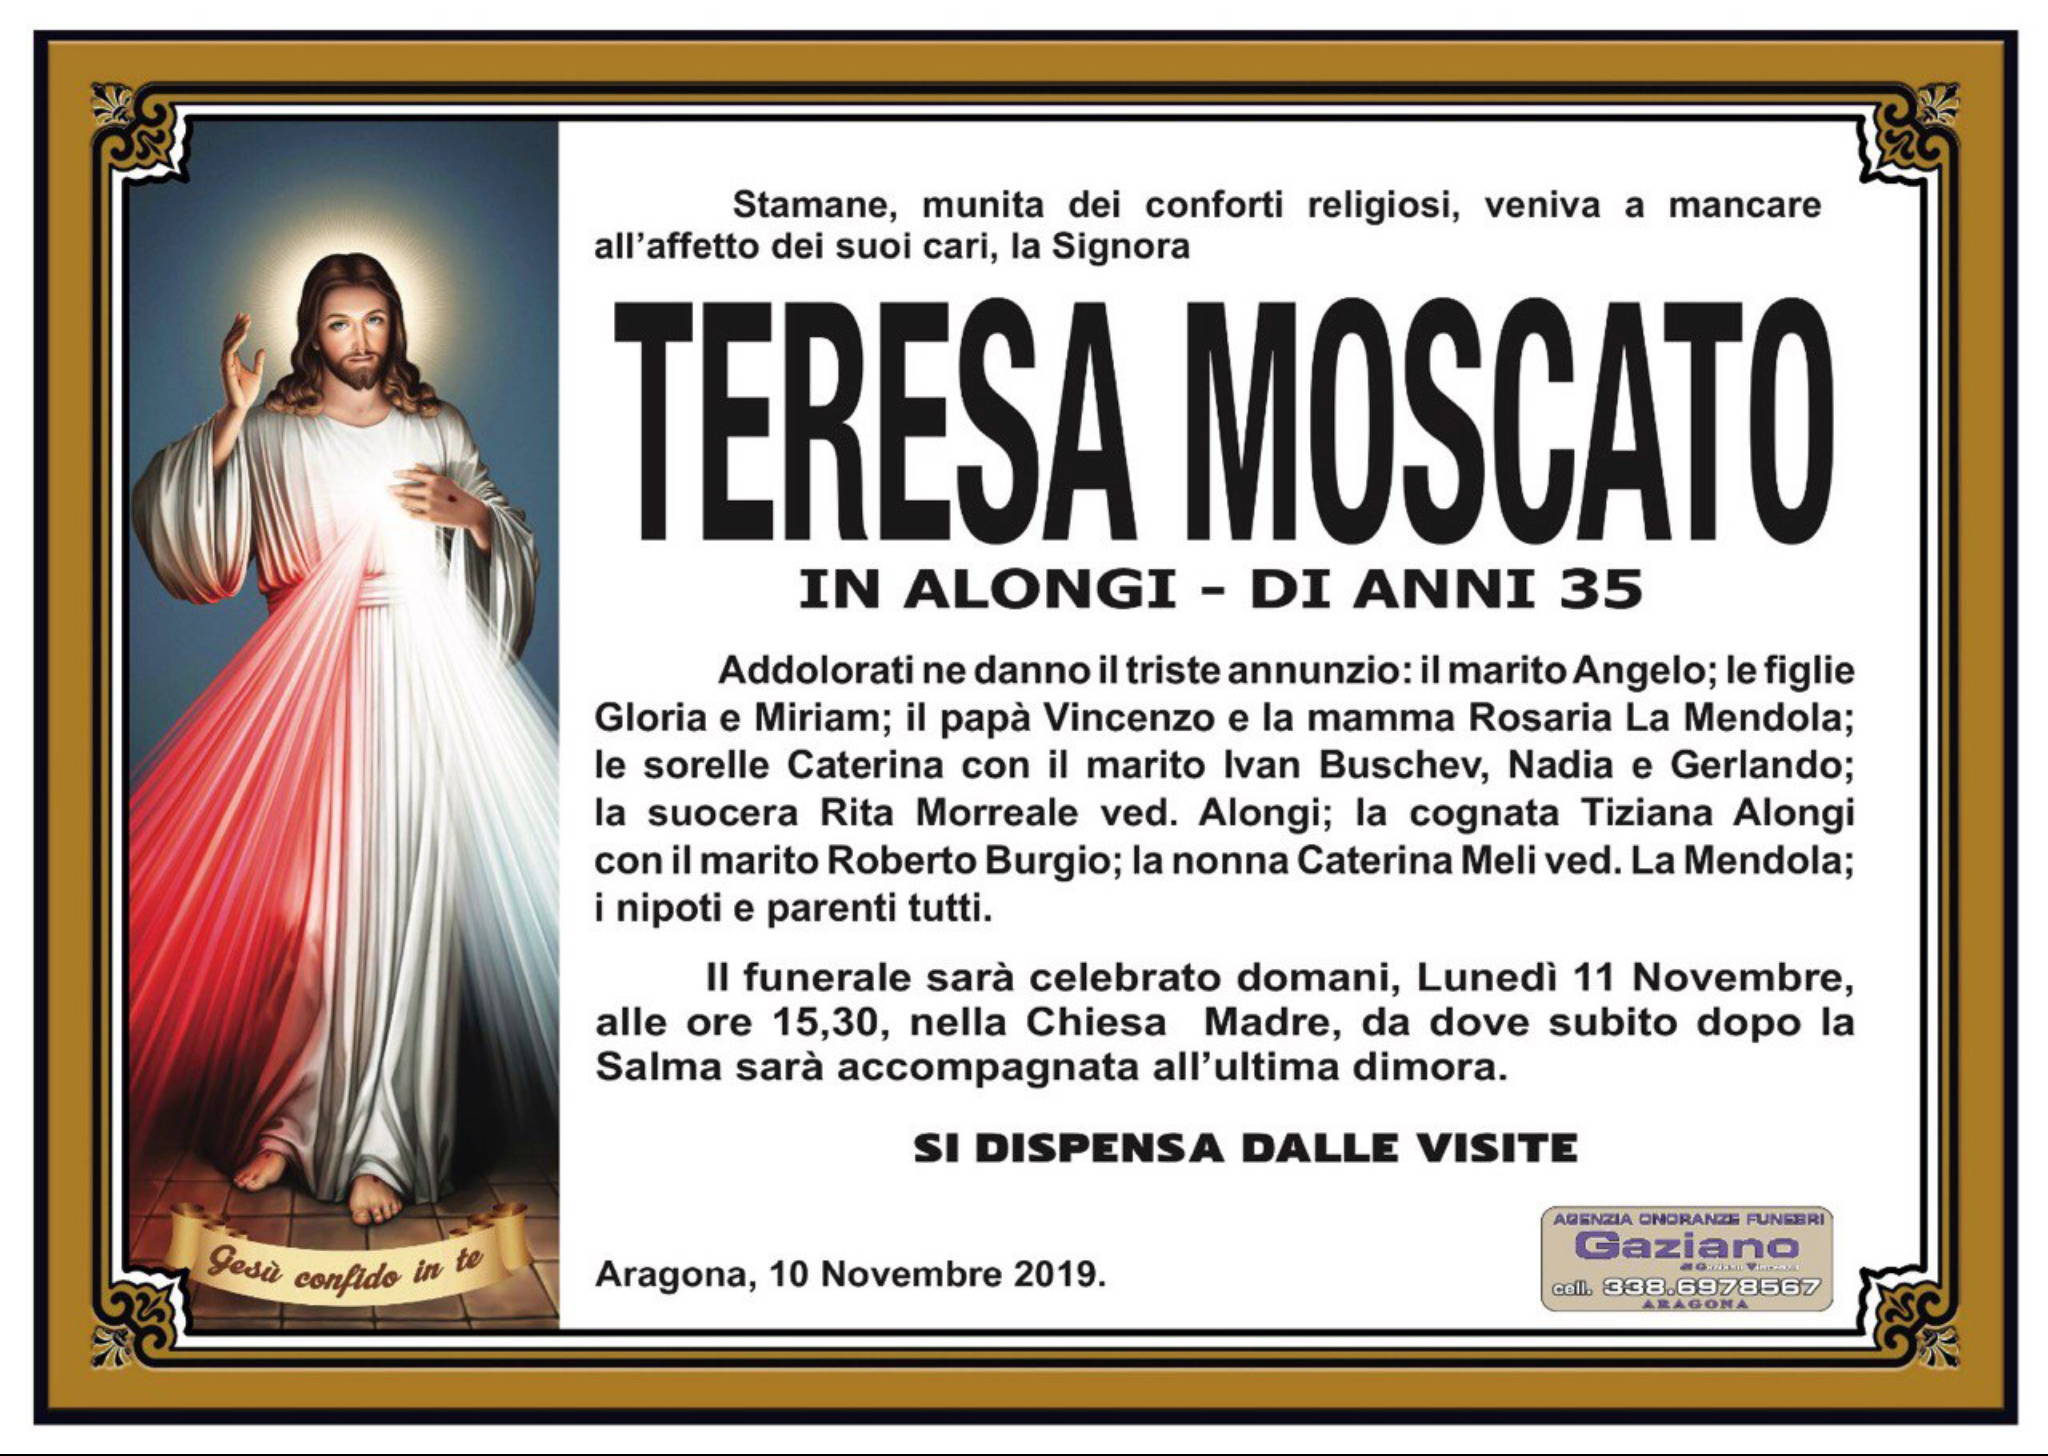 Teresa Moscato